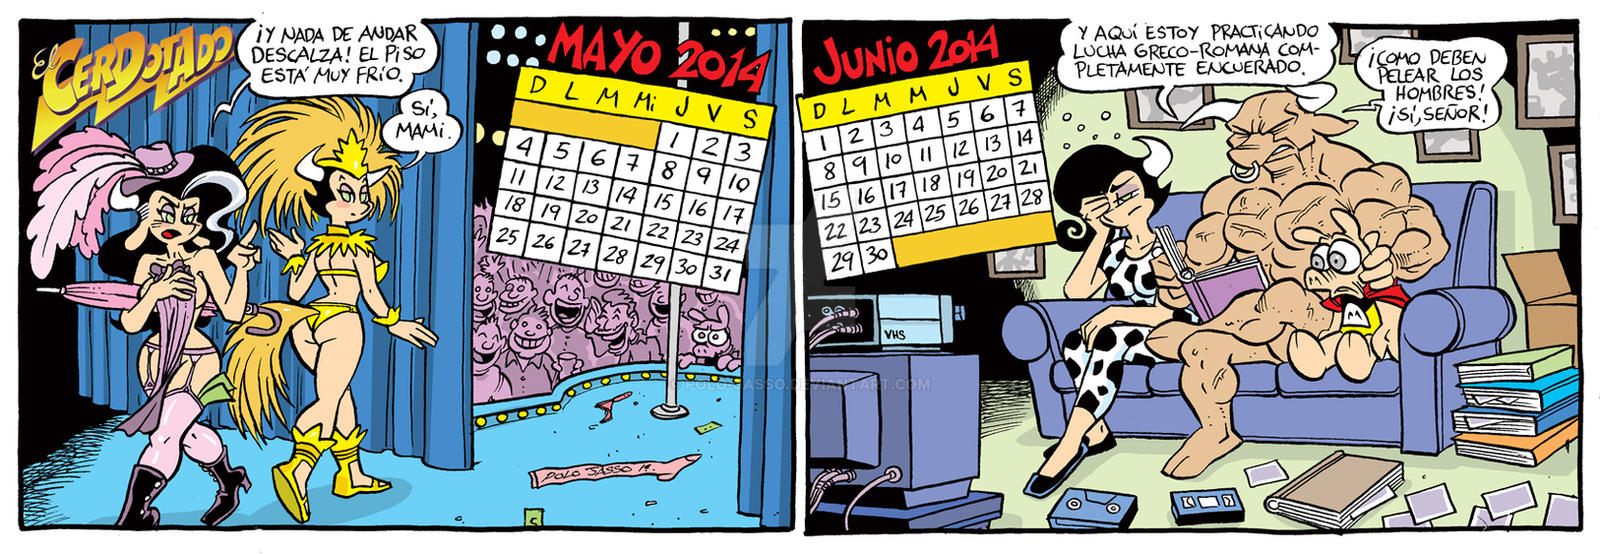 Calendario 2014 Mayo-Junio